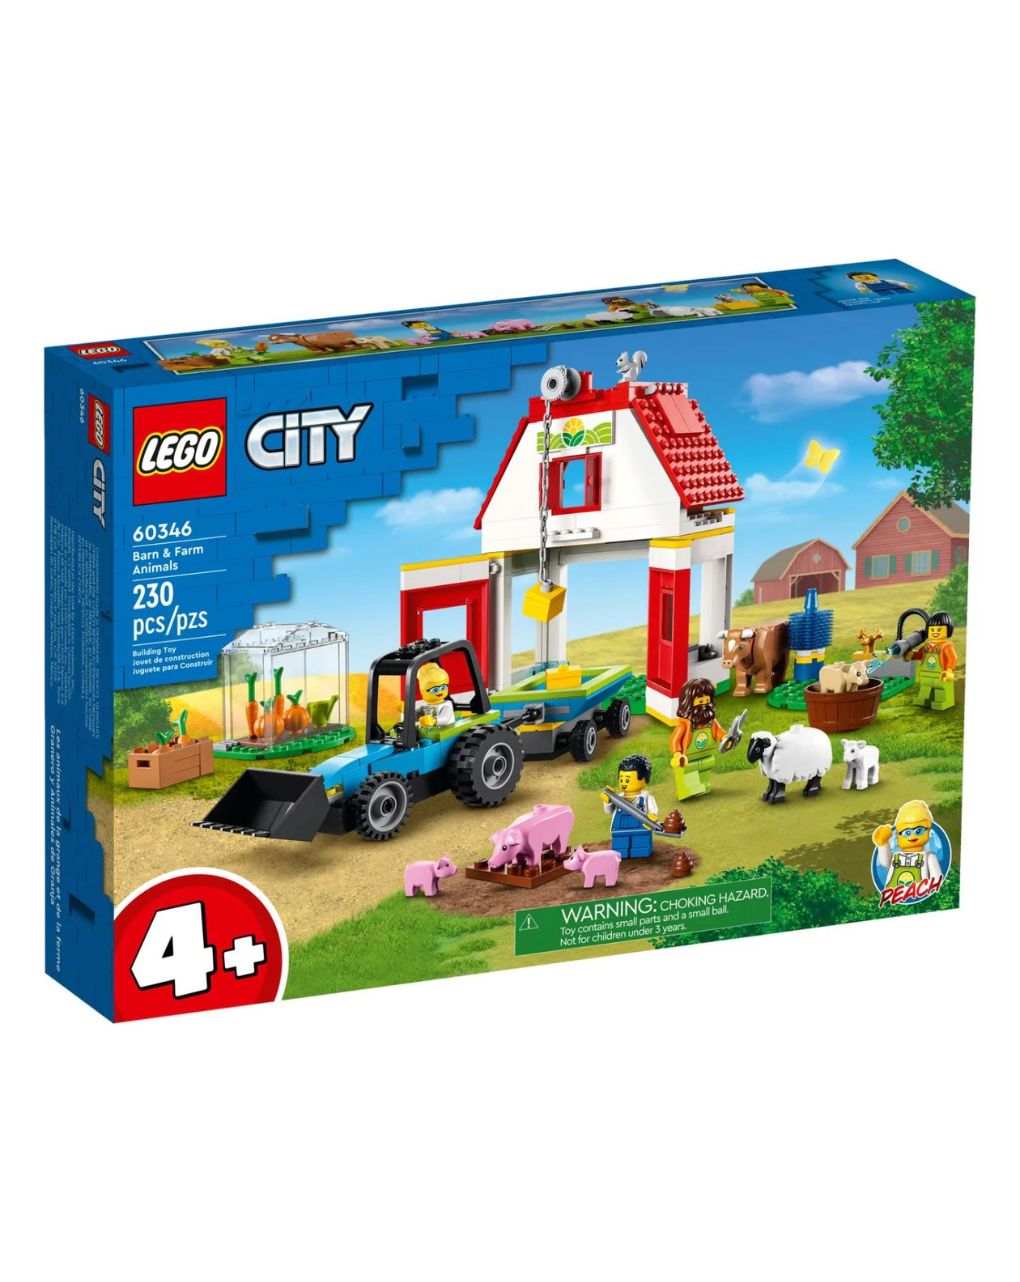 Lego city barn & farm animals 60346